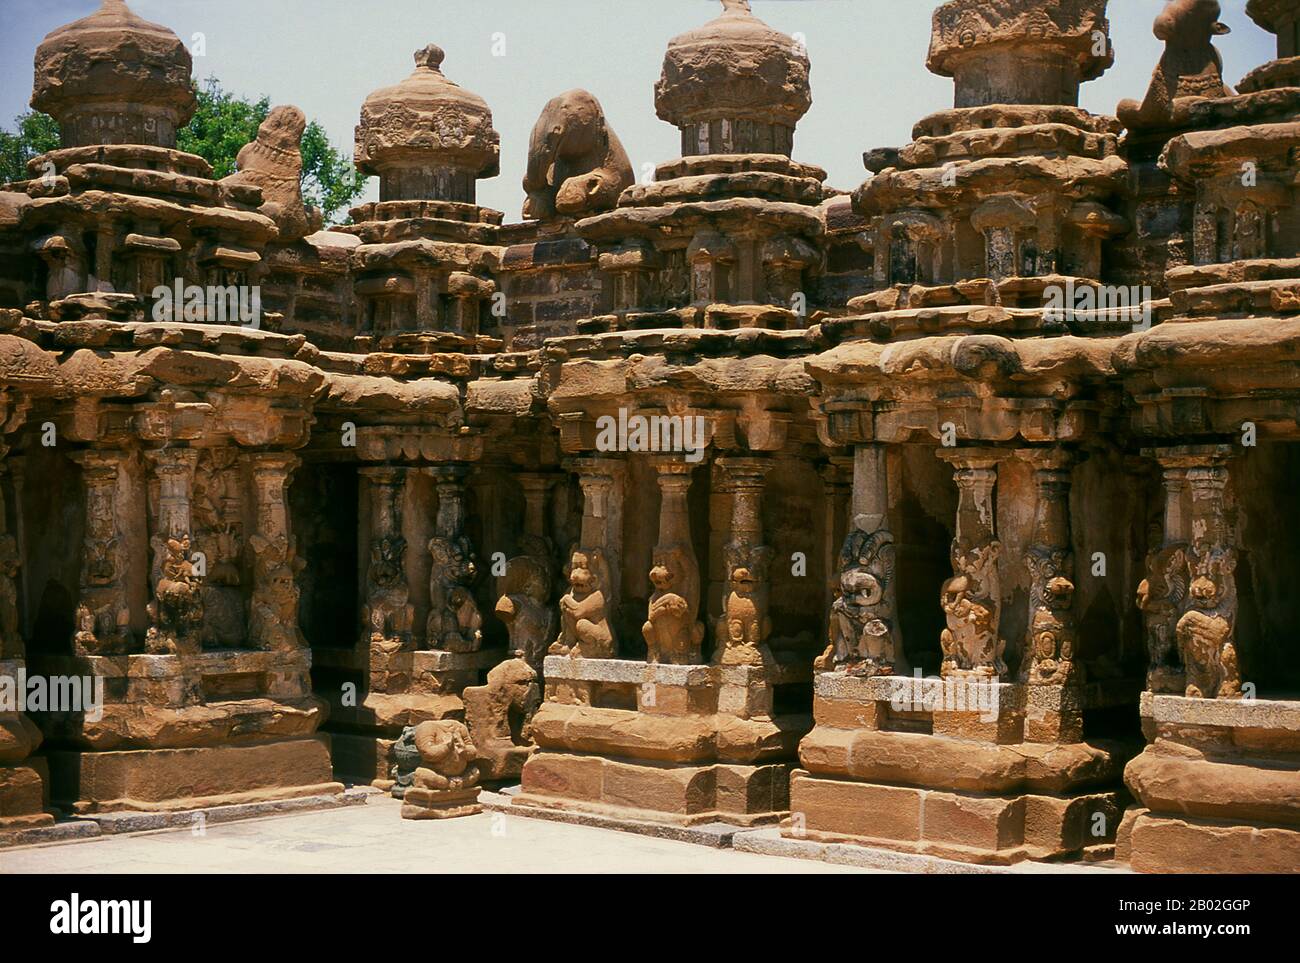 Der Kailasanathar (Herr des kosmischen Berges) Tempel ist ein Hindutempel im dravidischen Baustil. Sie ist dem gott Shiva gewidmet und wurde zwischen 685 und 705 CE vom Pallava-Dynastie-Machthaber Rajasimha erbaut. Der Bau wurde von Raajasimhas Sohn Mahendra Varma abgeschlossen. Stockfoto